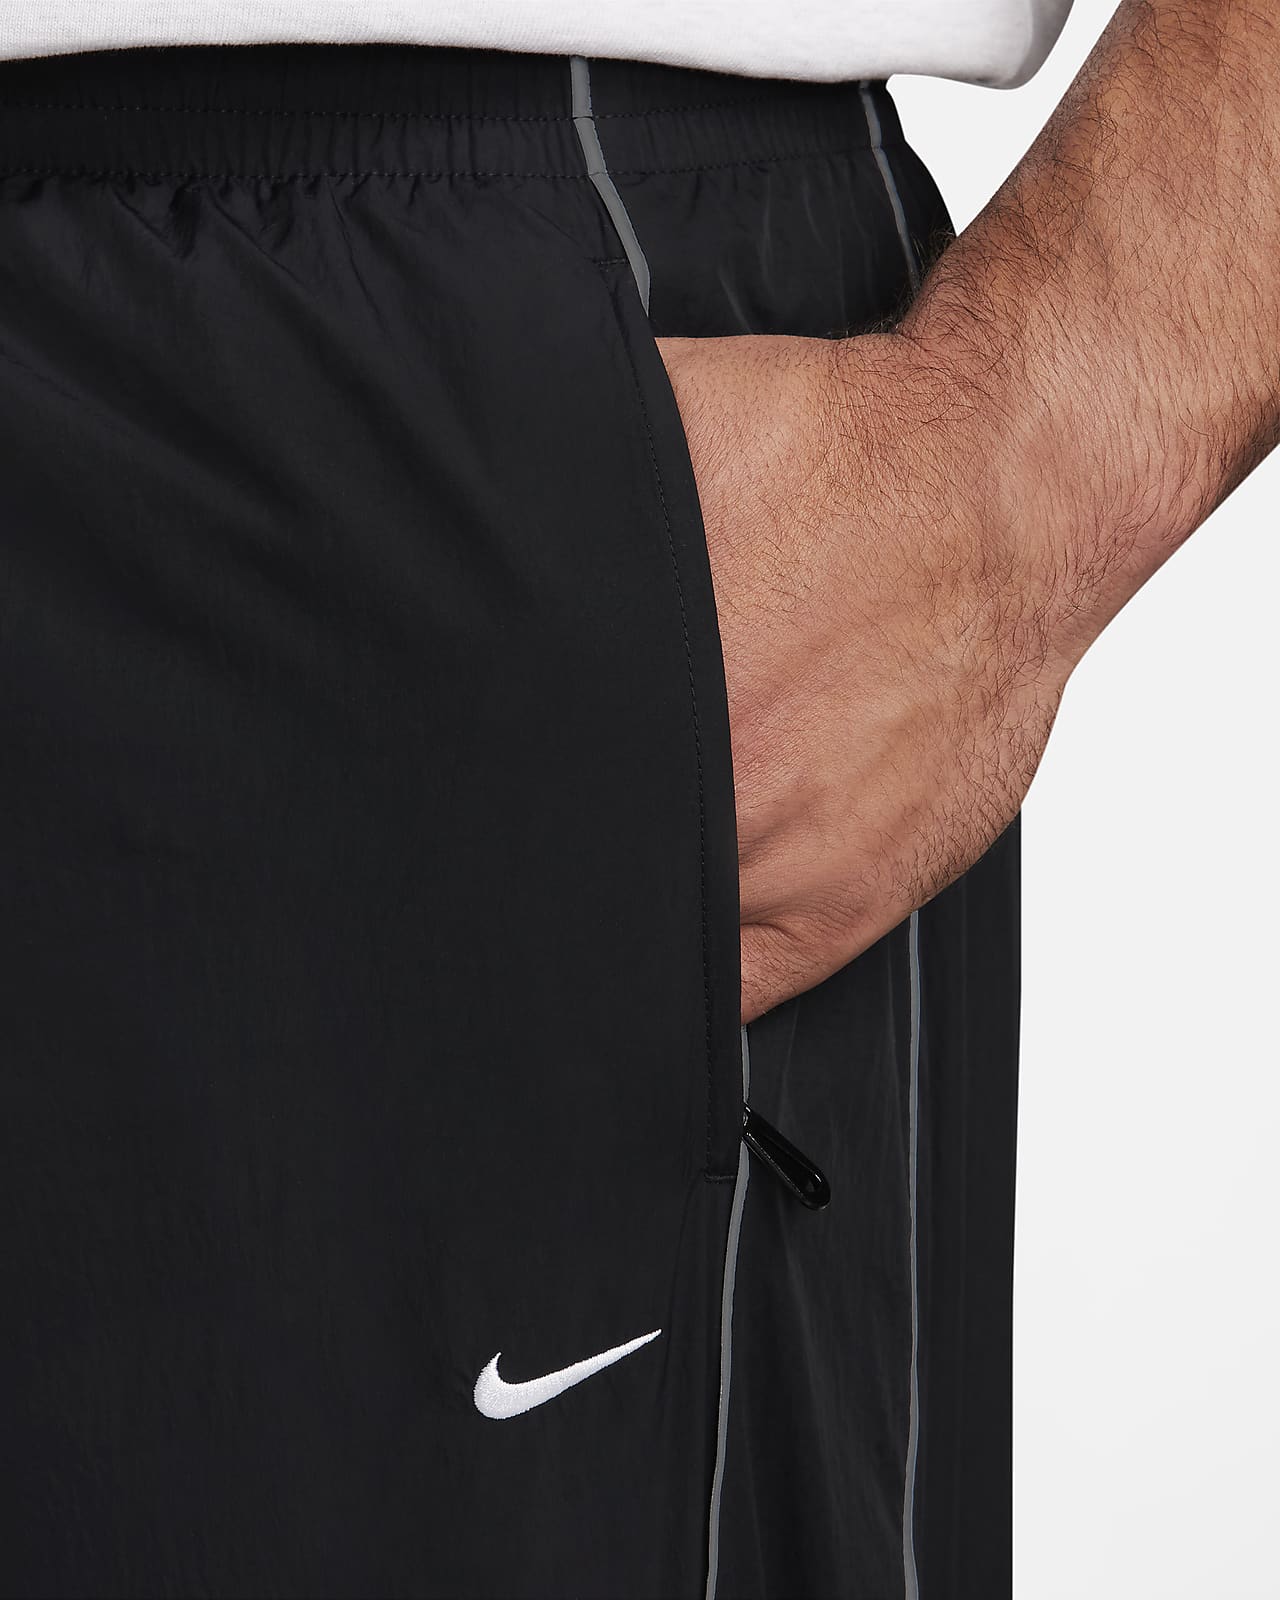 Amazon.com : Nike Mens Pro Heist Dri-FIT Baseball Sliding Shorts  (Black/Black, XL) : Sports & Outdoors